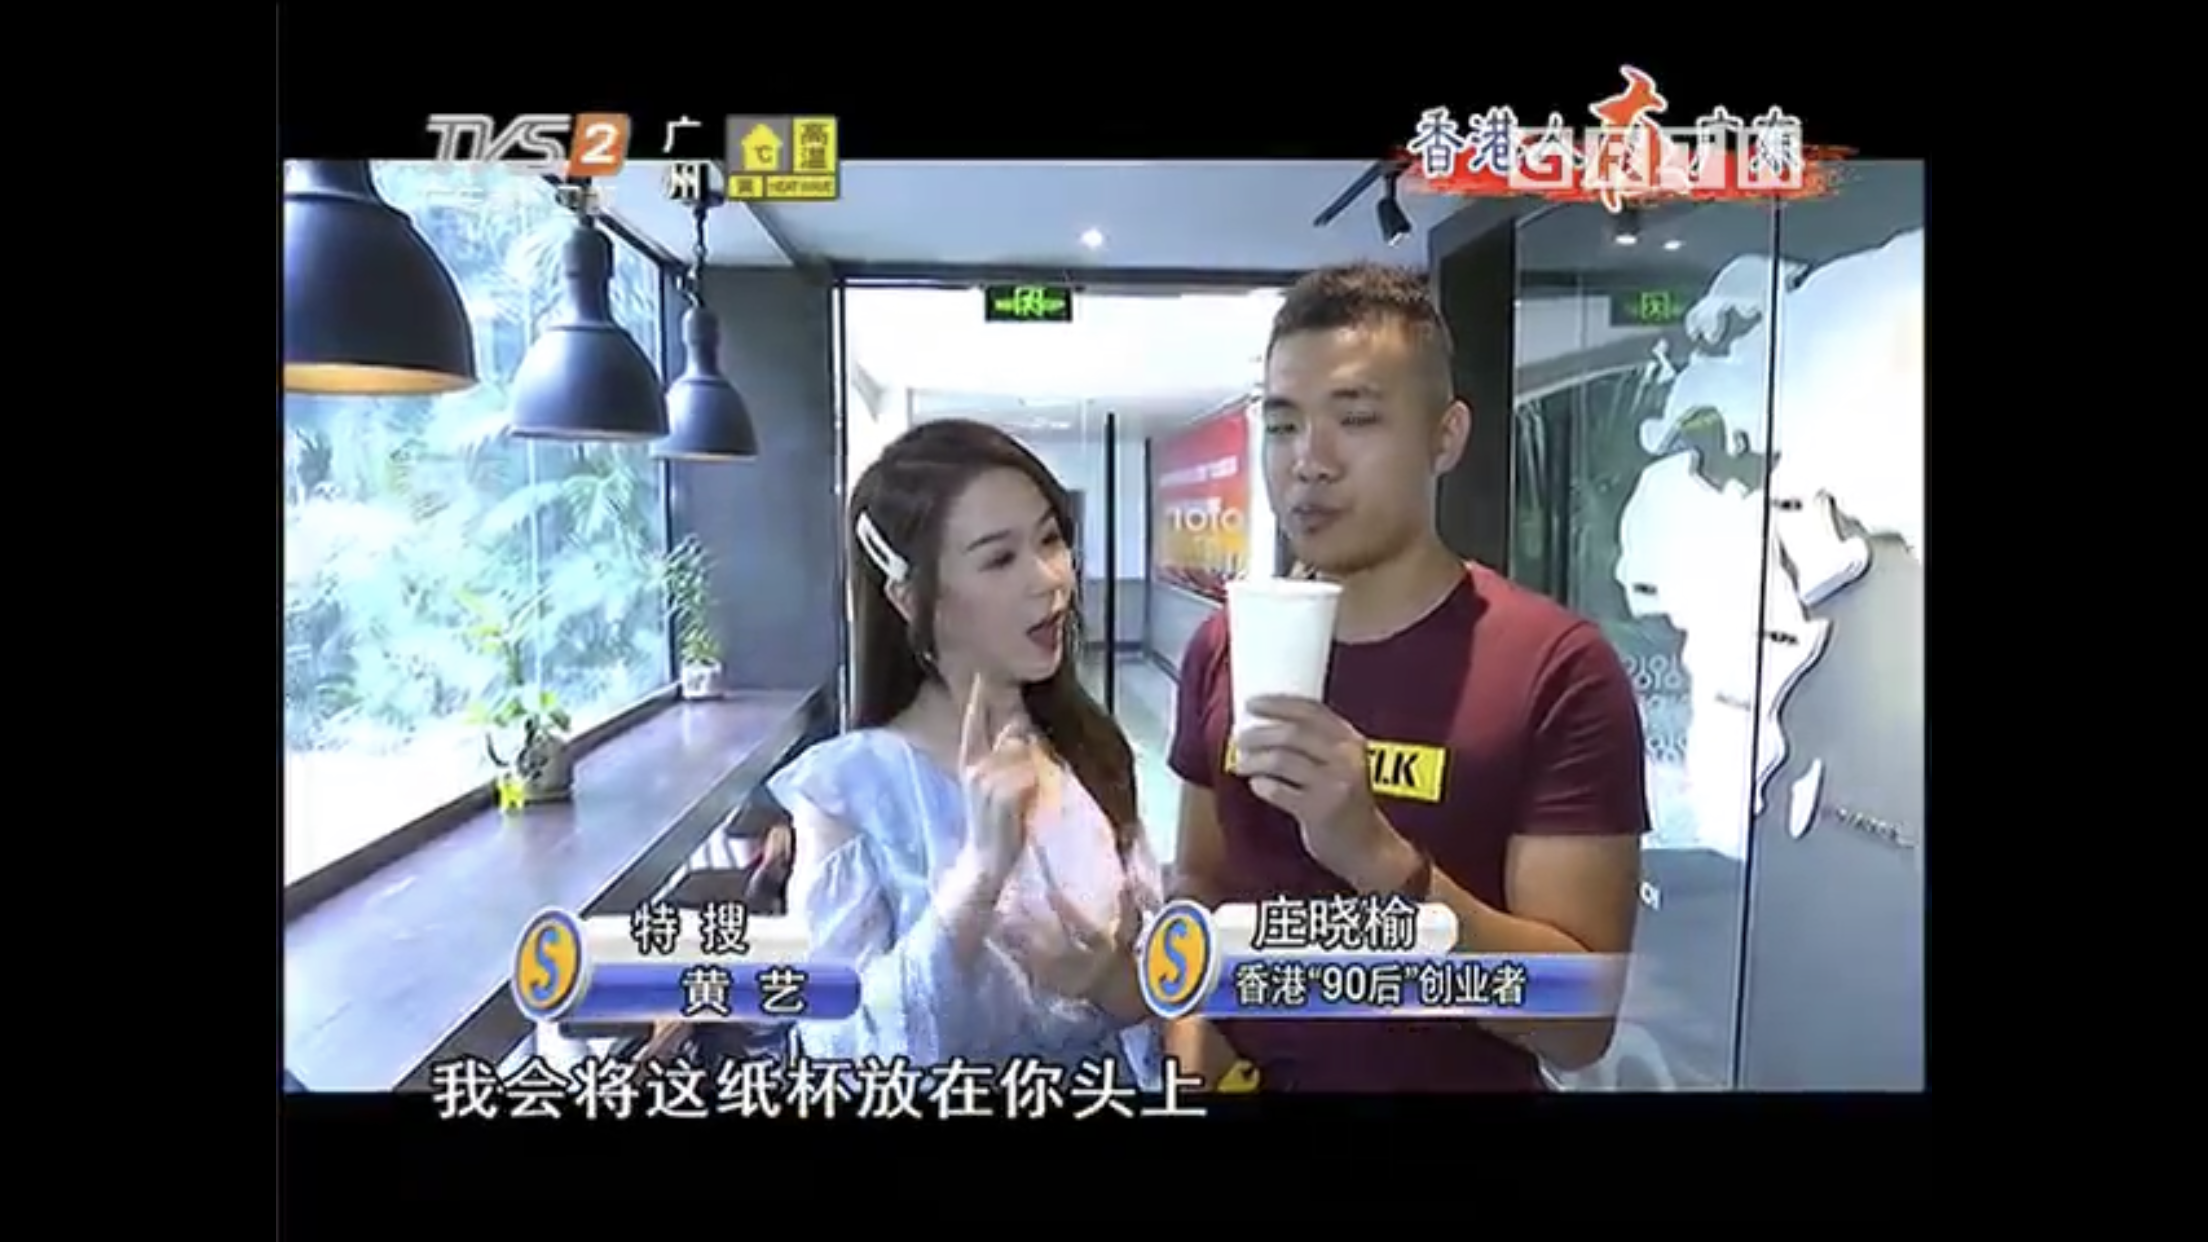 莊曉榆 演藝人傳媒報導: 《廣東電視台》雙節棍採訪嘉賓